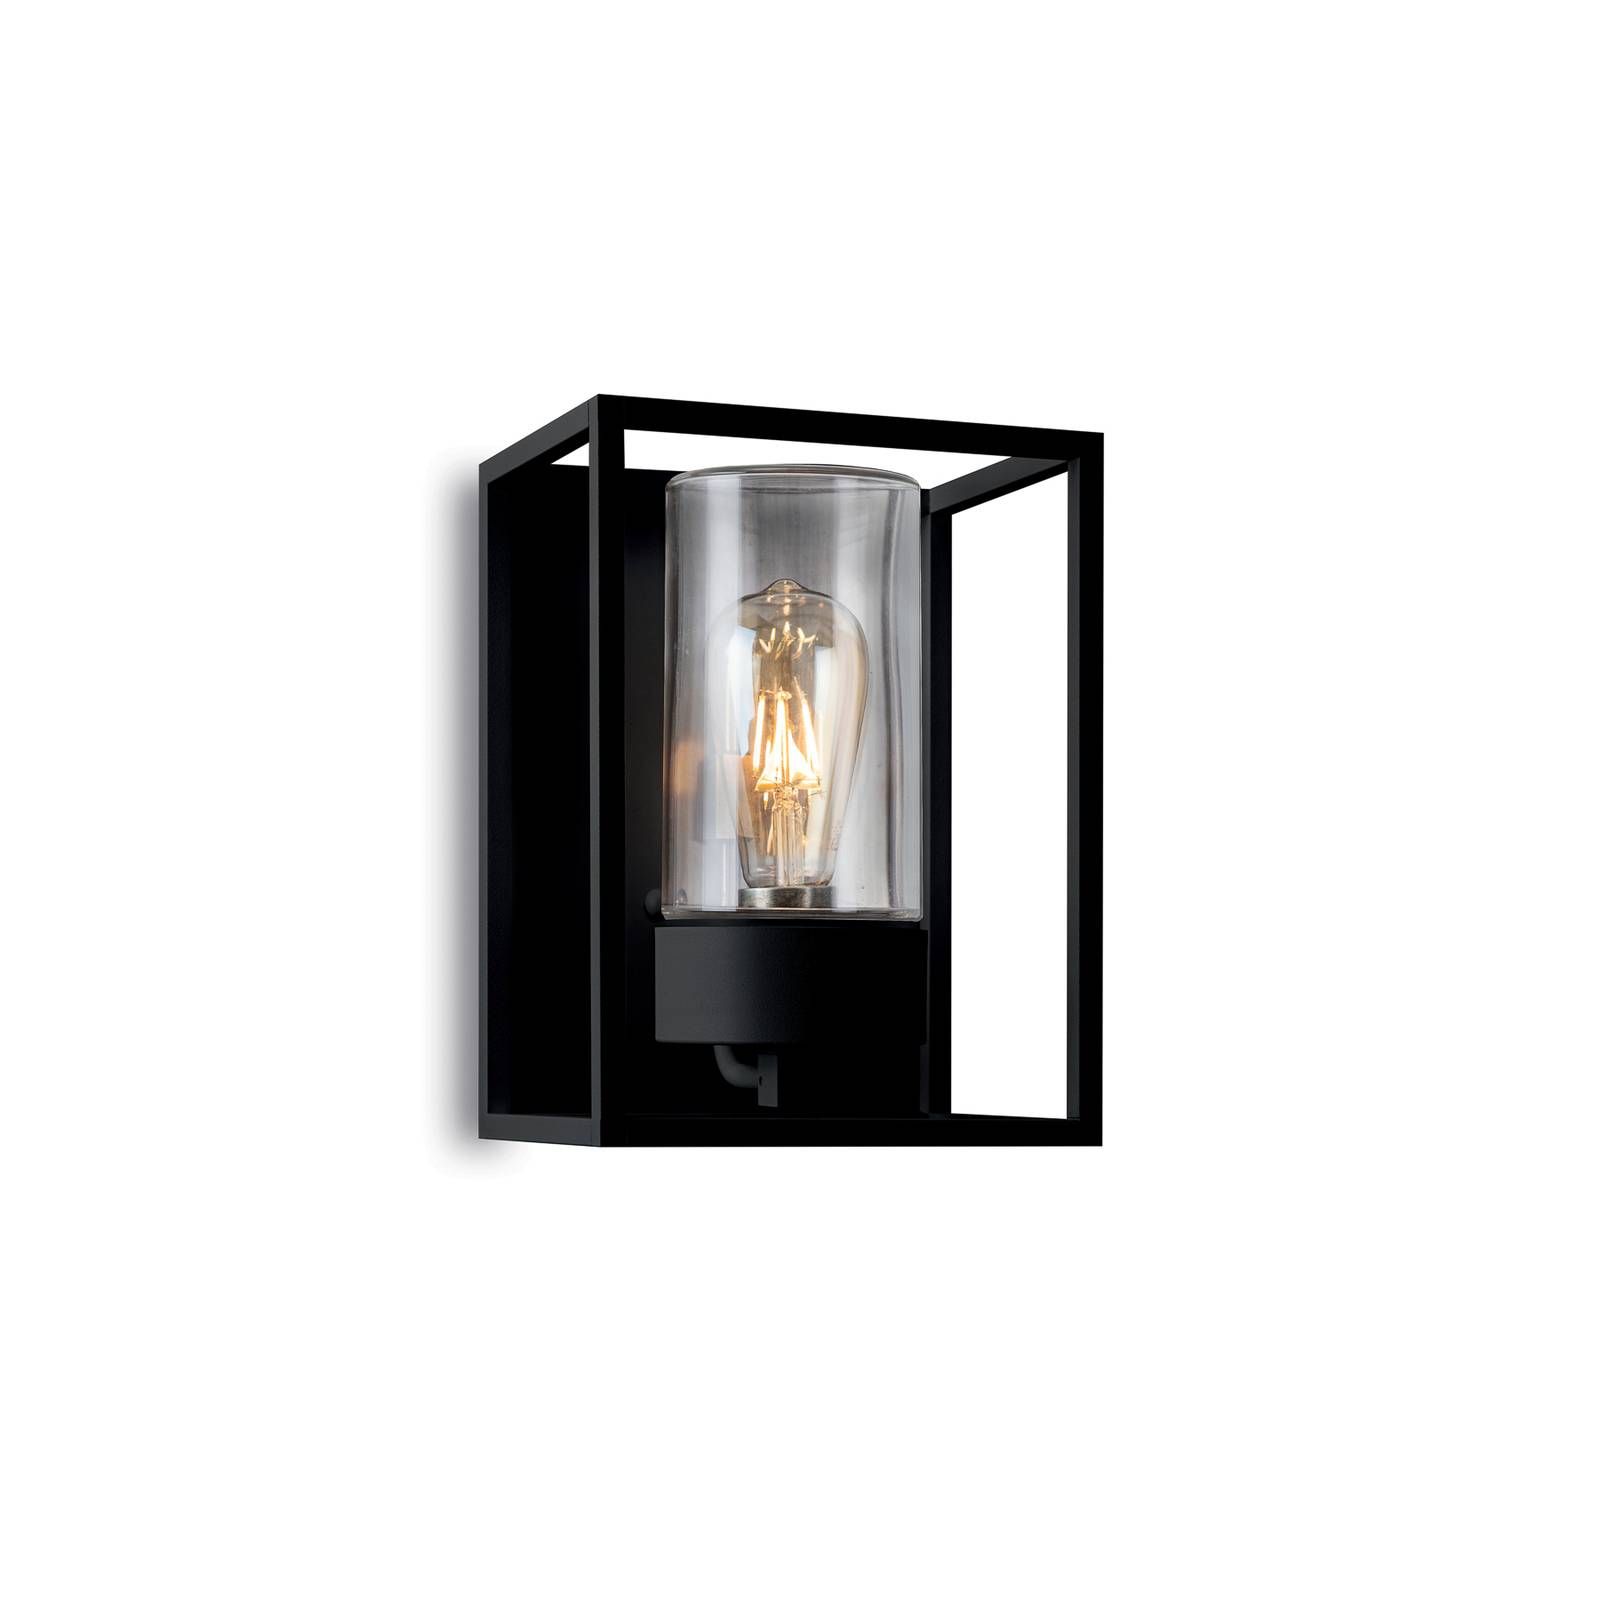 Moretti Luce Vonkajšie nástenné svetlo Cubic³ 3366 čierna/číra, mosadz, hliník, sklo, E27, 52W, L: 20 cm, K: 27cm